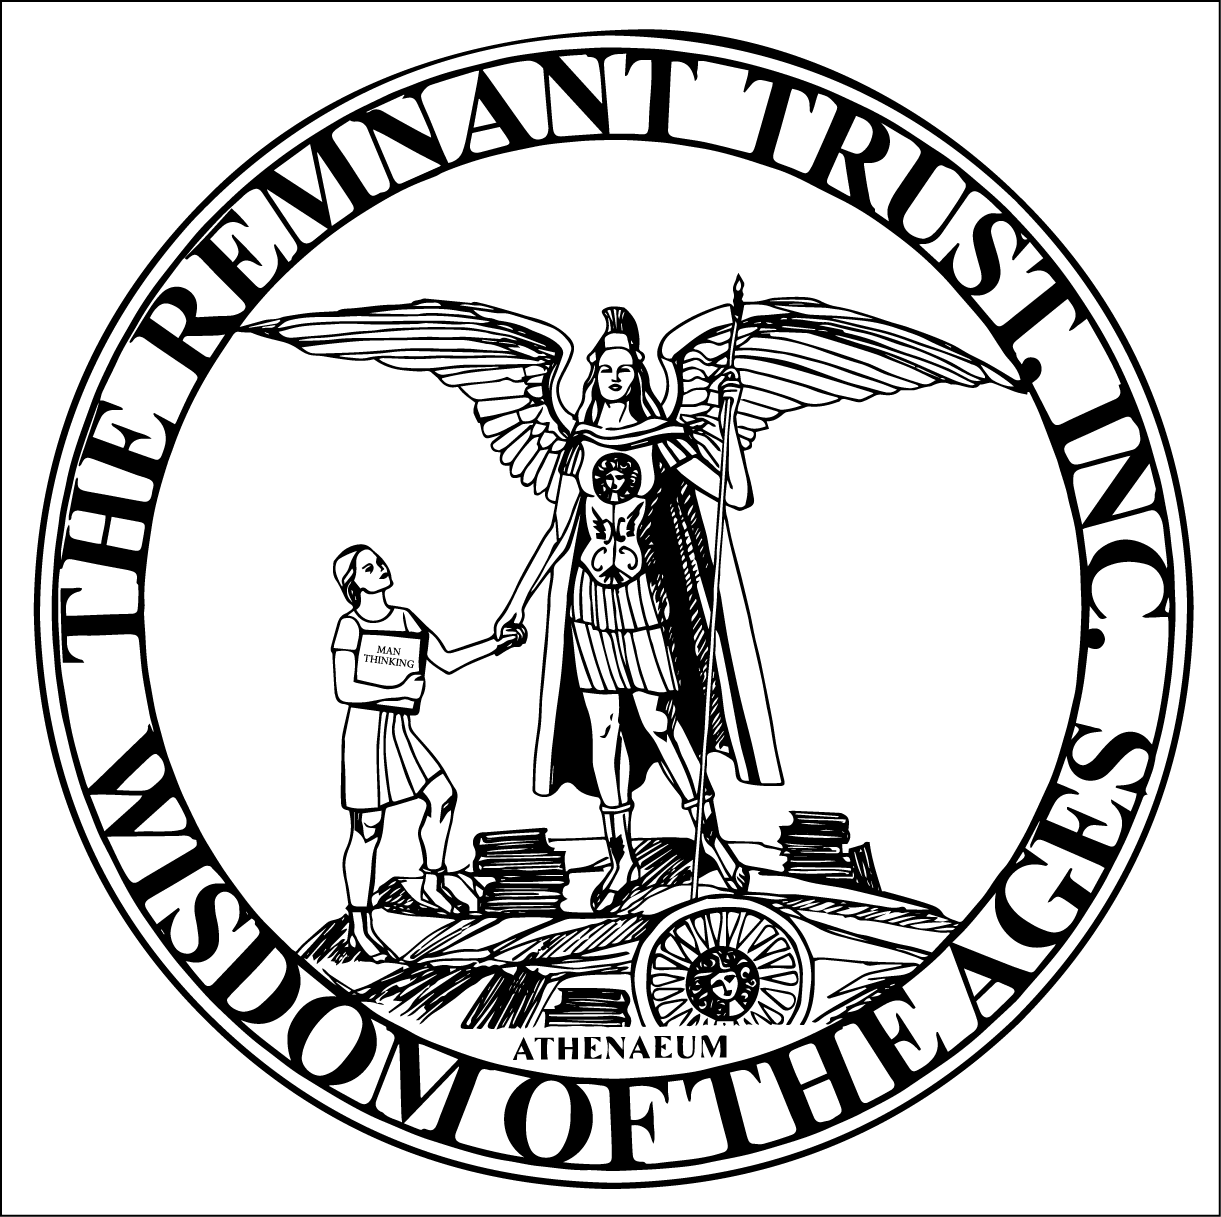 Remnant Trust